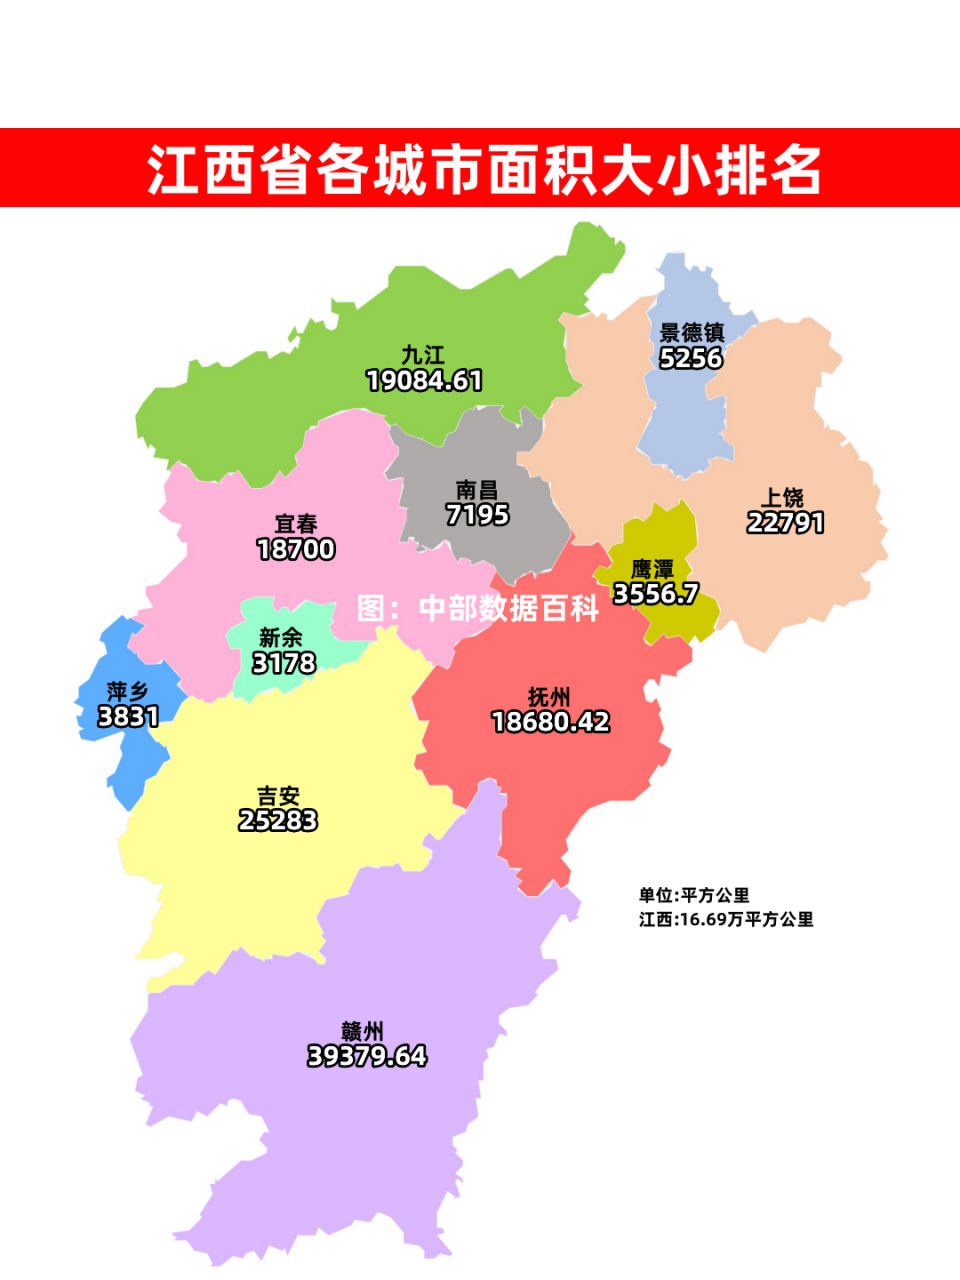 江西各城市面积大小,江西省总面积为16